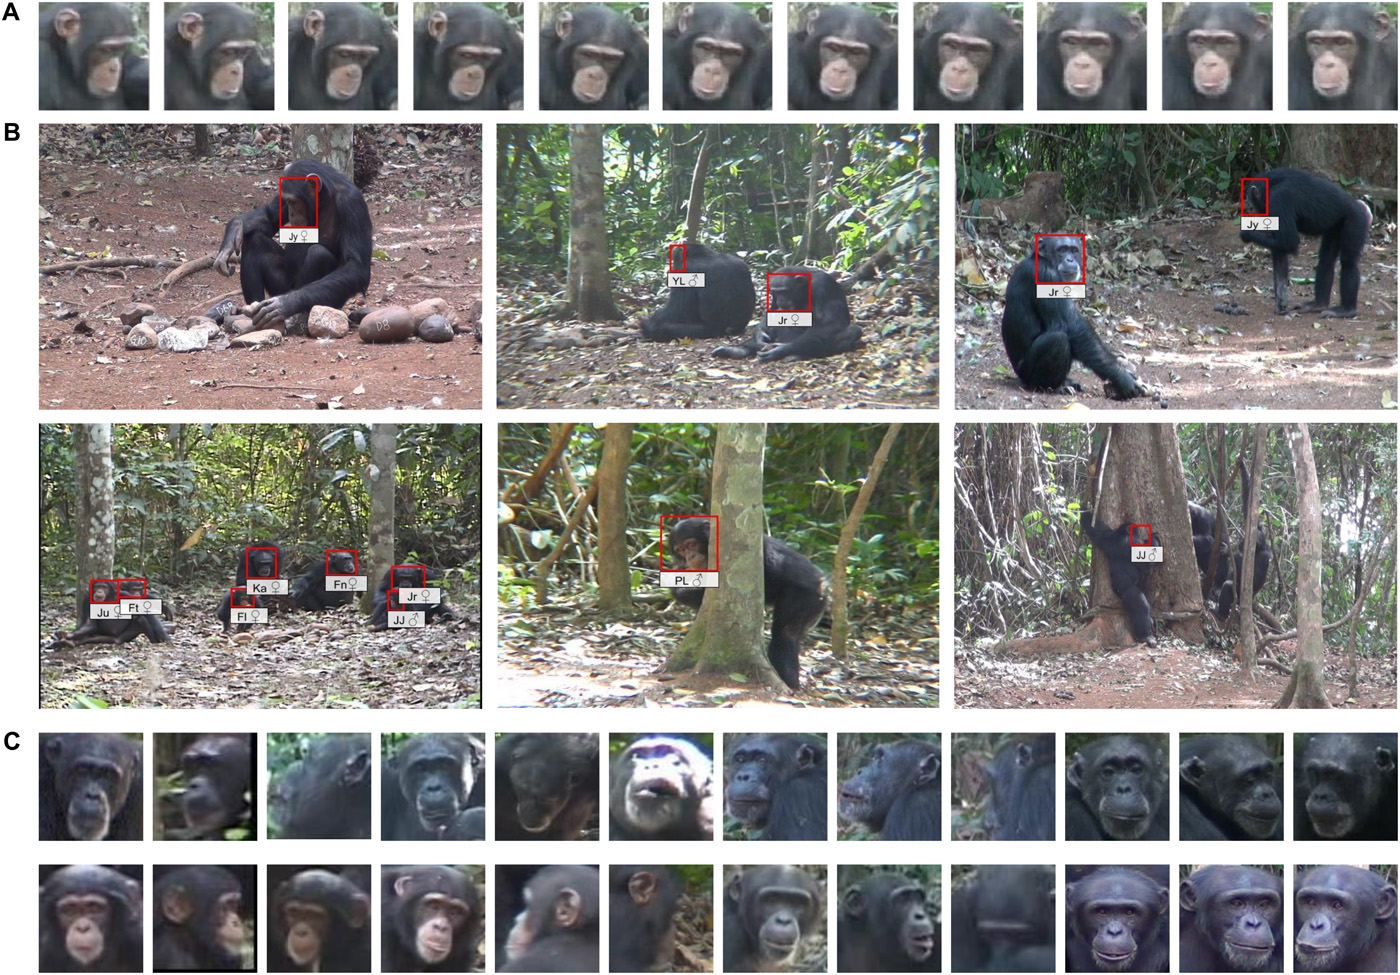 Алгоритм распознавания лиц позволяет отслеживать поведение и возраст шимпанзе